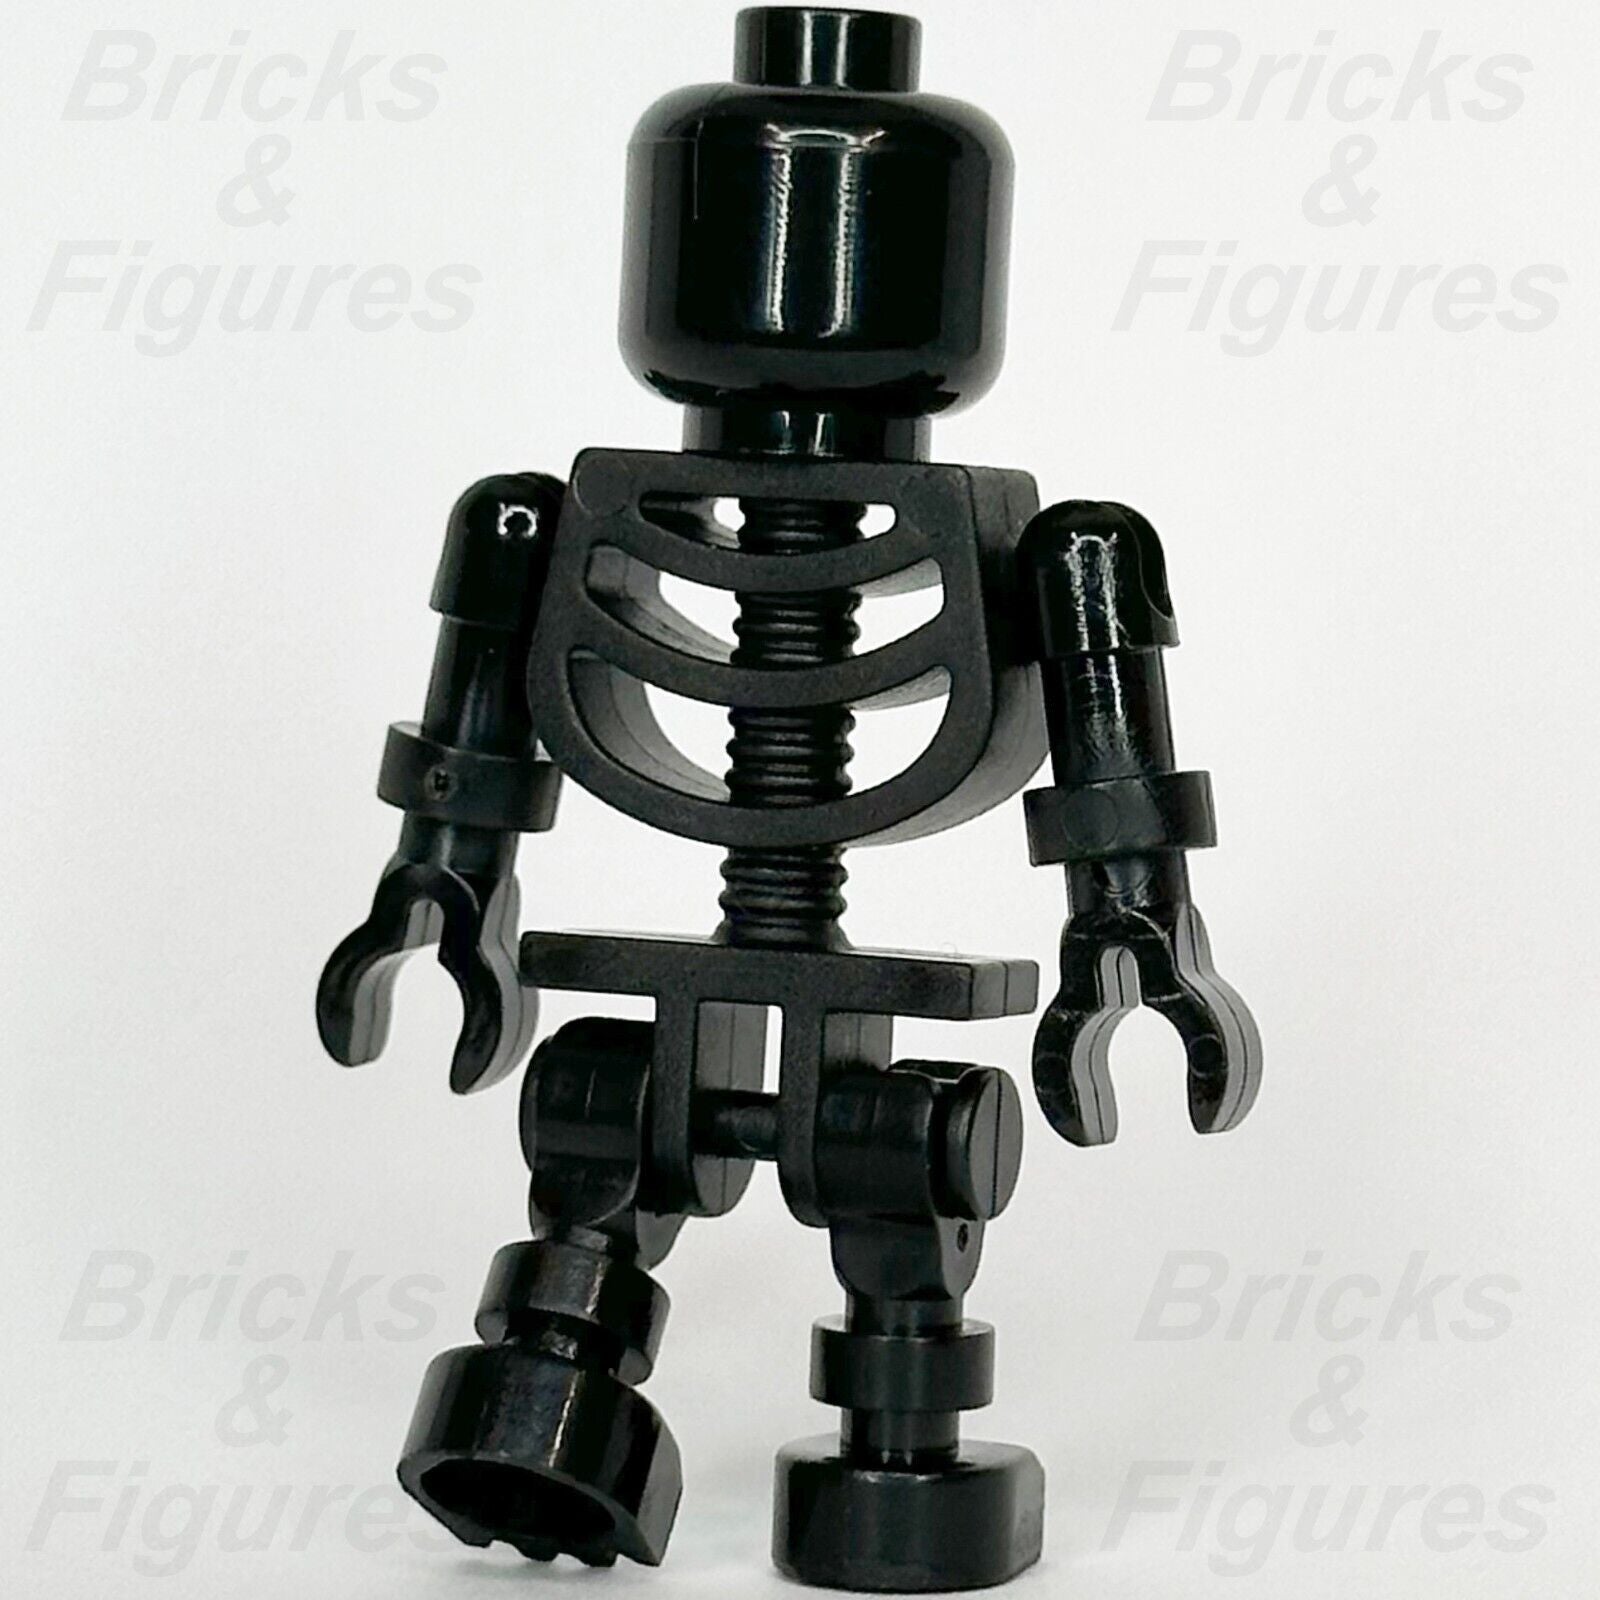 LEGO Harry Potter Black Skeleton Minifigure Goblet of Fire Evil Skull 4766